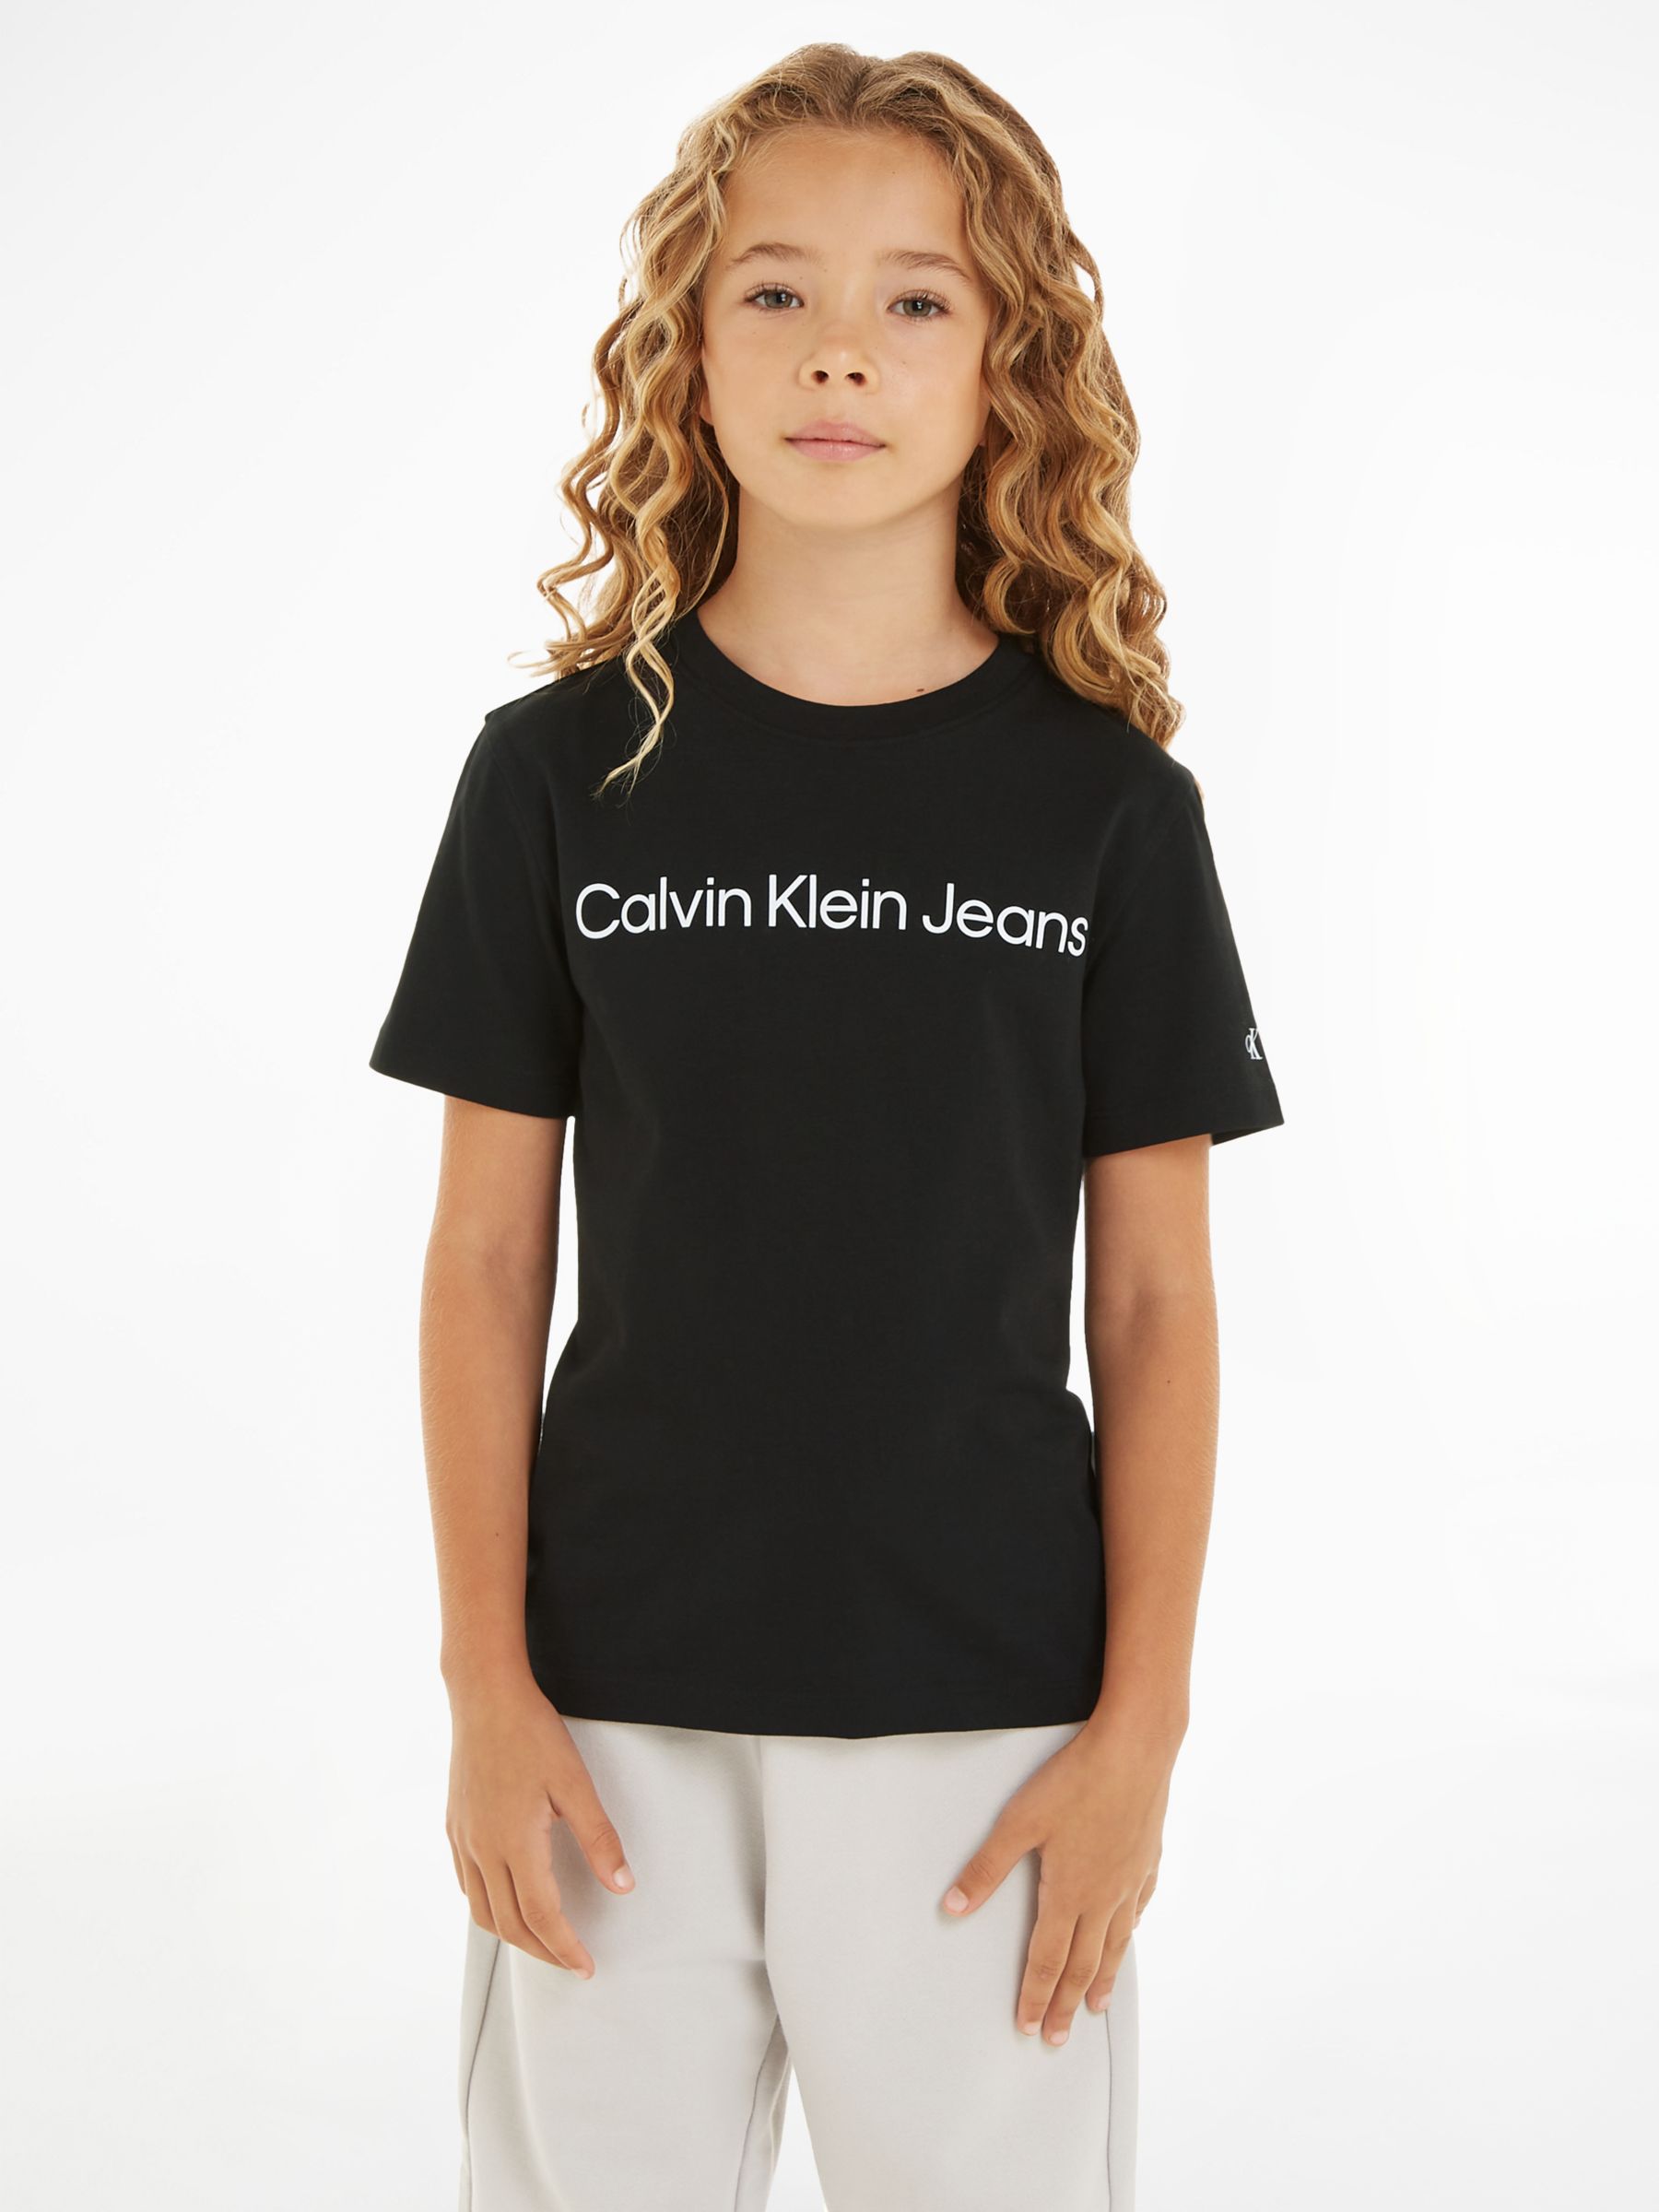 Calvin Klein Kids' Cotton Classic Logo Short Sleeve T-Shirt, Ck